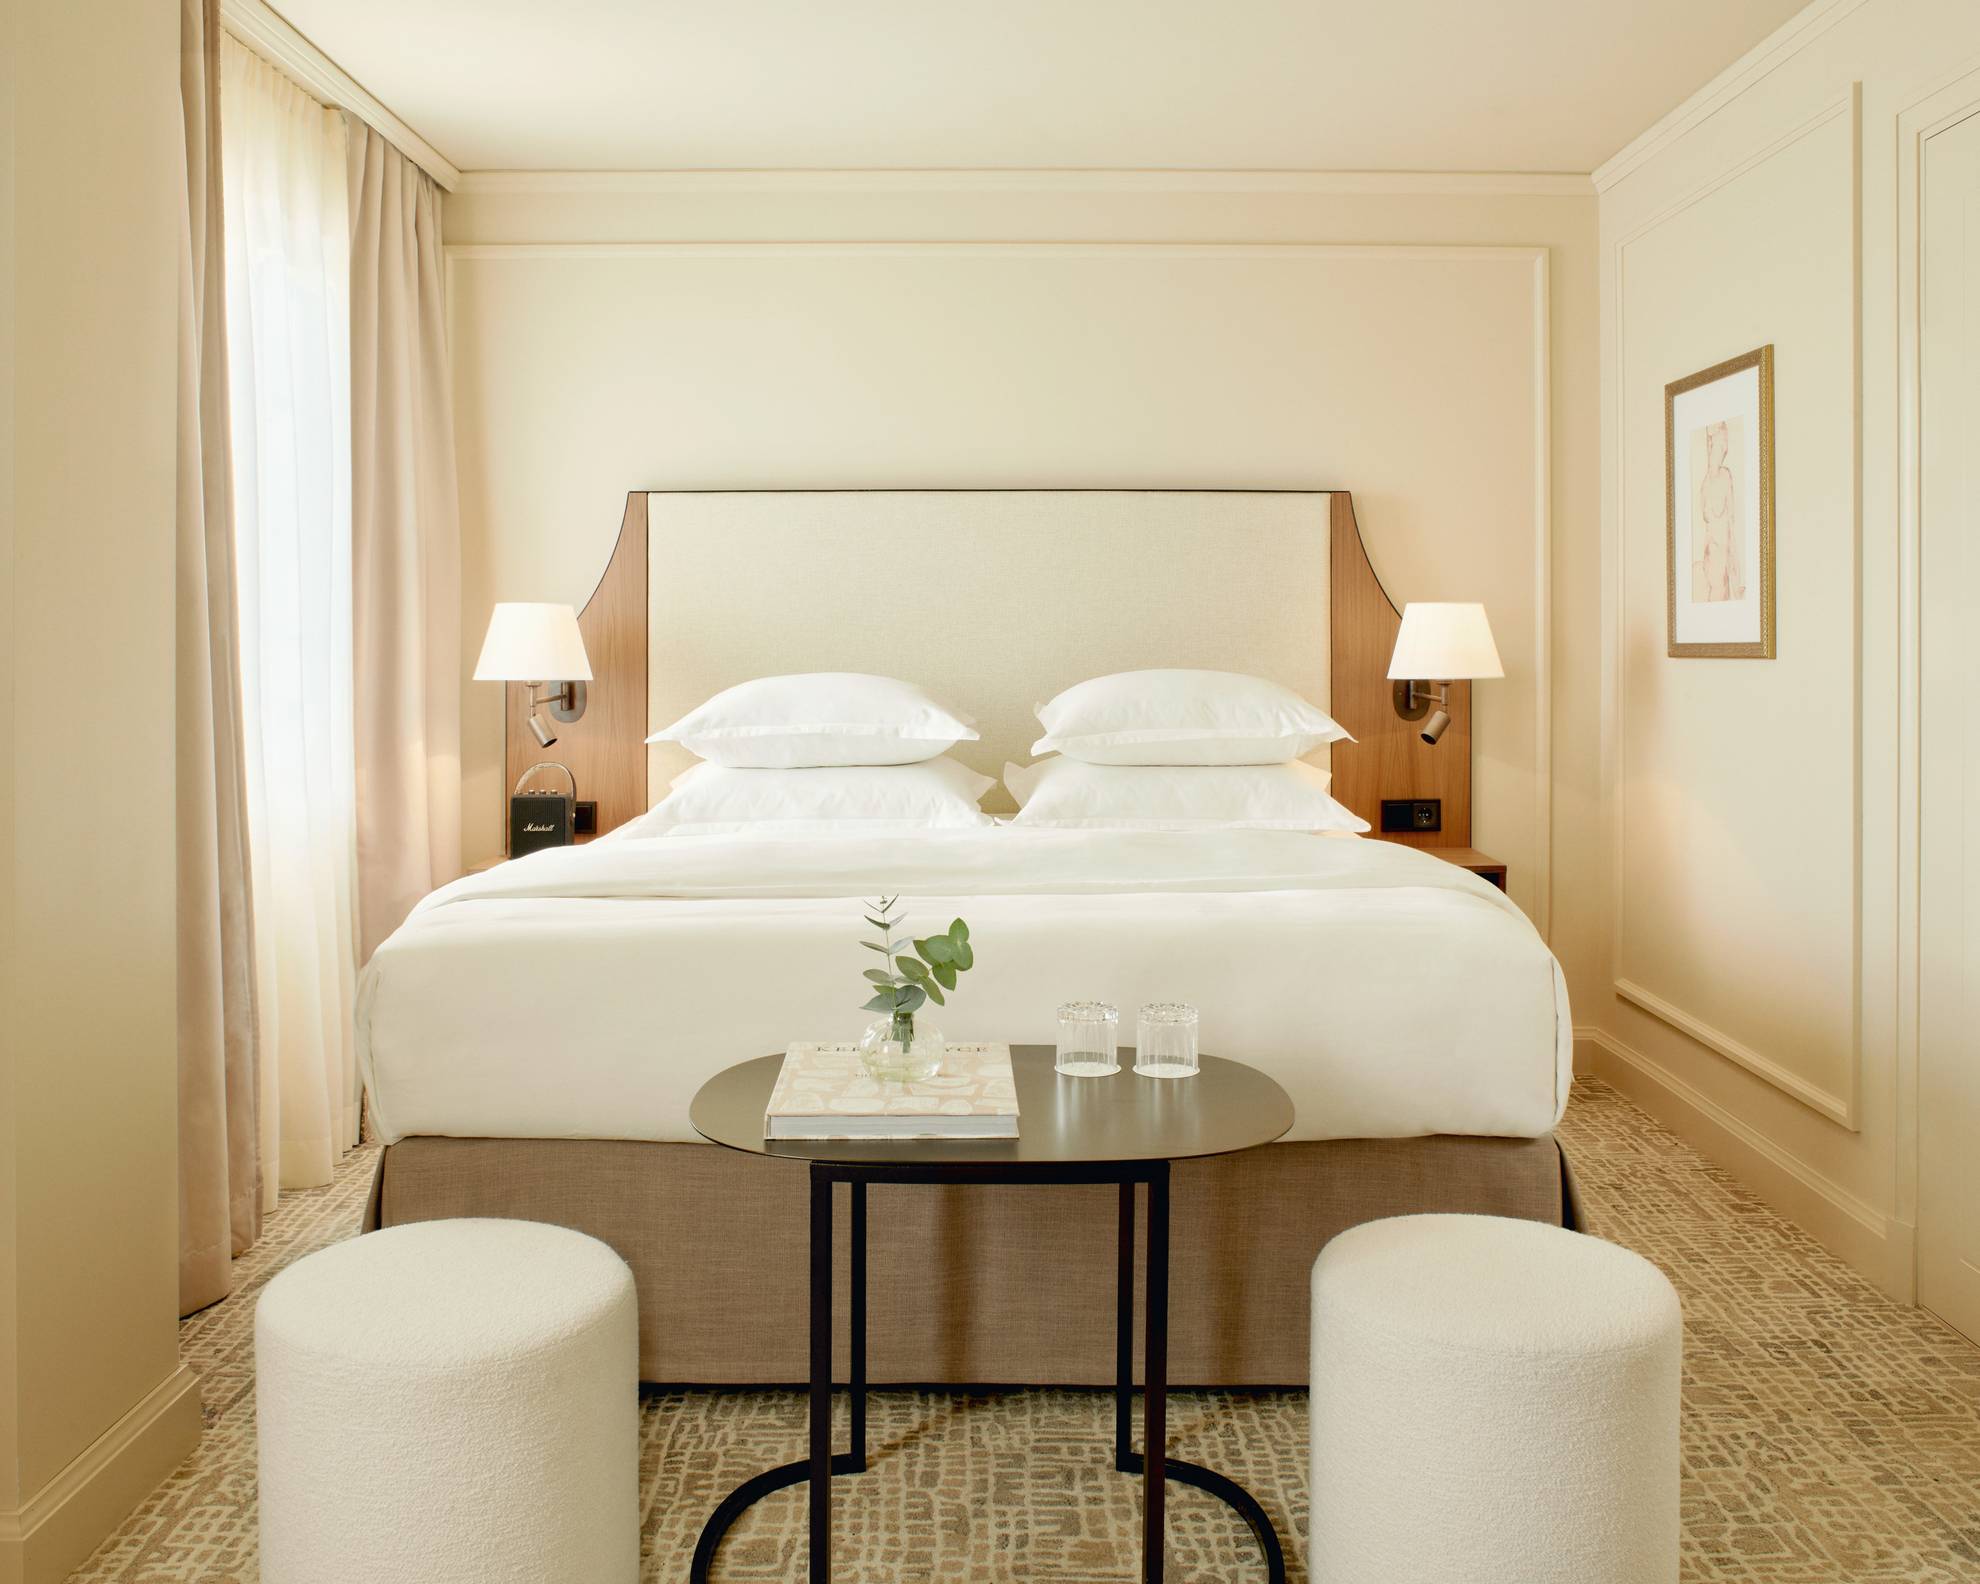 Ein Hotelzimmer in der Villa Dahlia. Das Zimmer hat helle Wände, ein Doppelbett, einen dunklen kleinen Tisch und zwei weiße Sitzpolster.